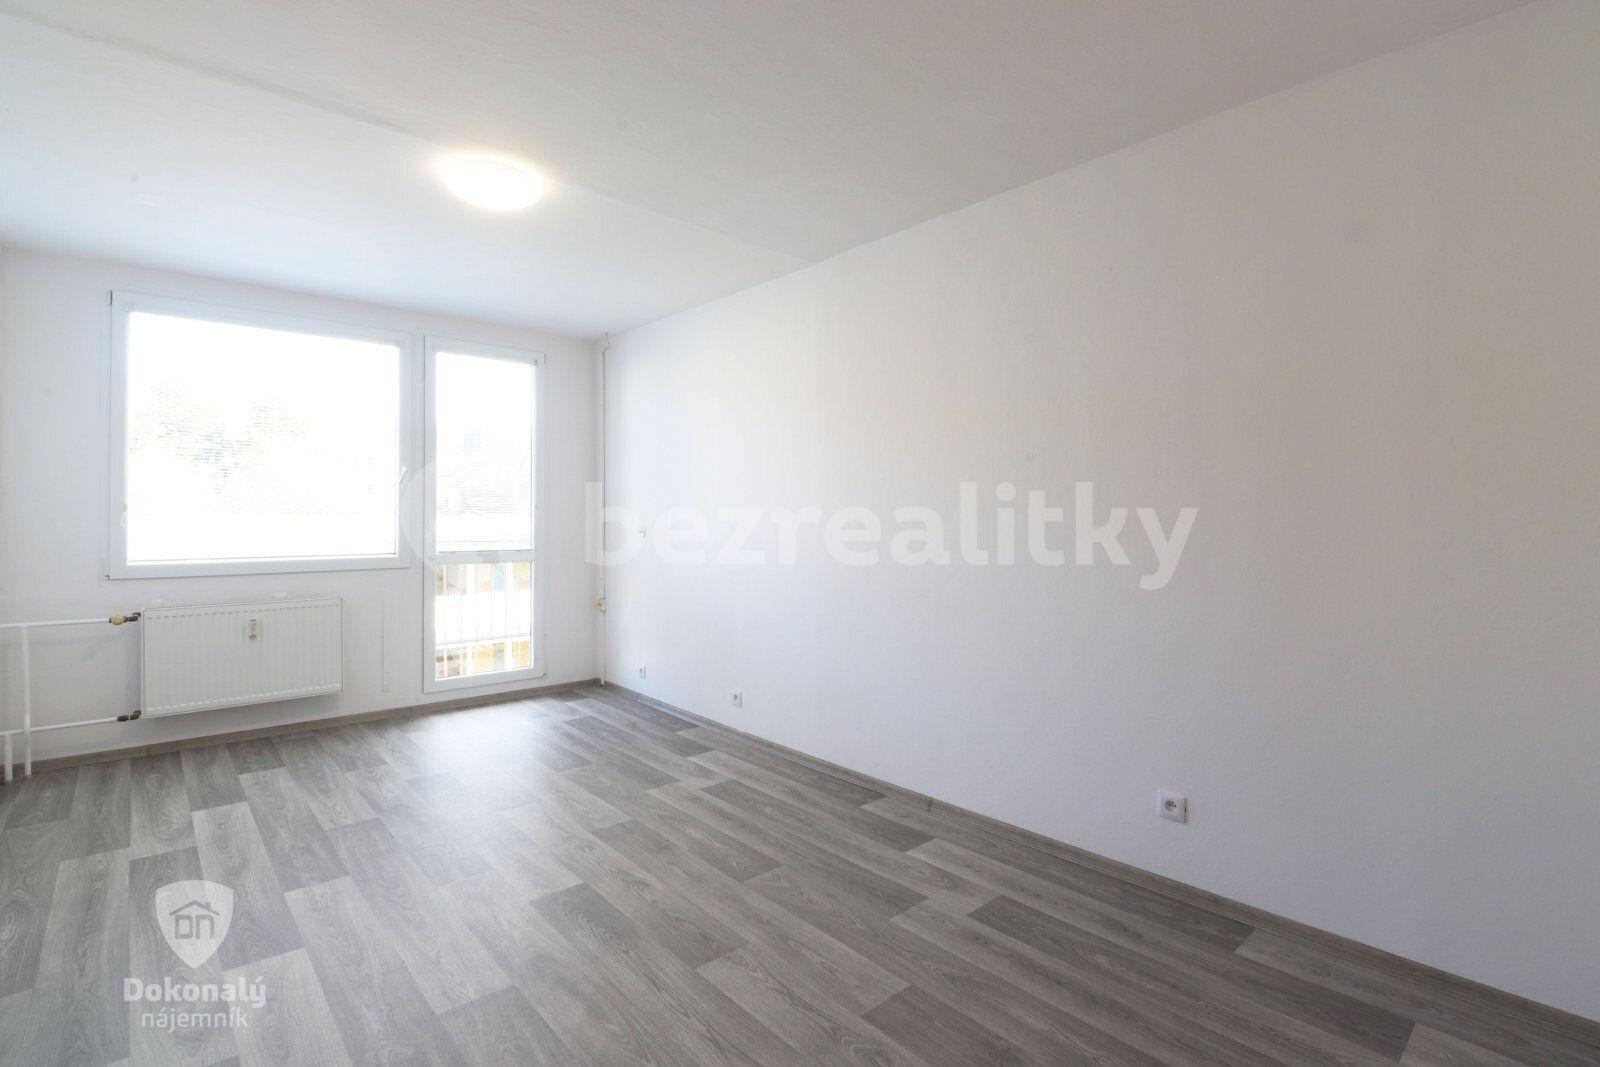 3 bedroom flat to rent, 70 m², Dlouhá, Příbram, Středočeský Region